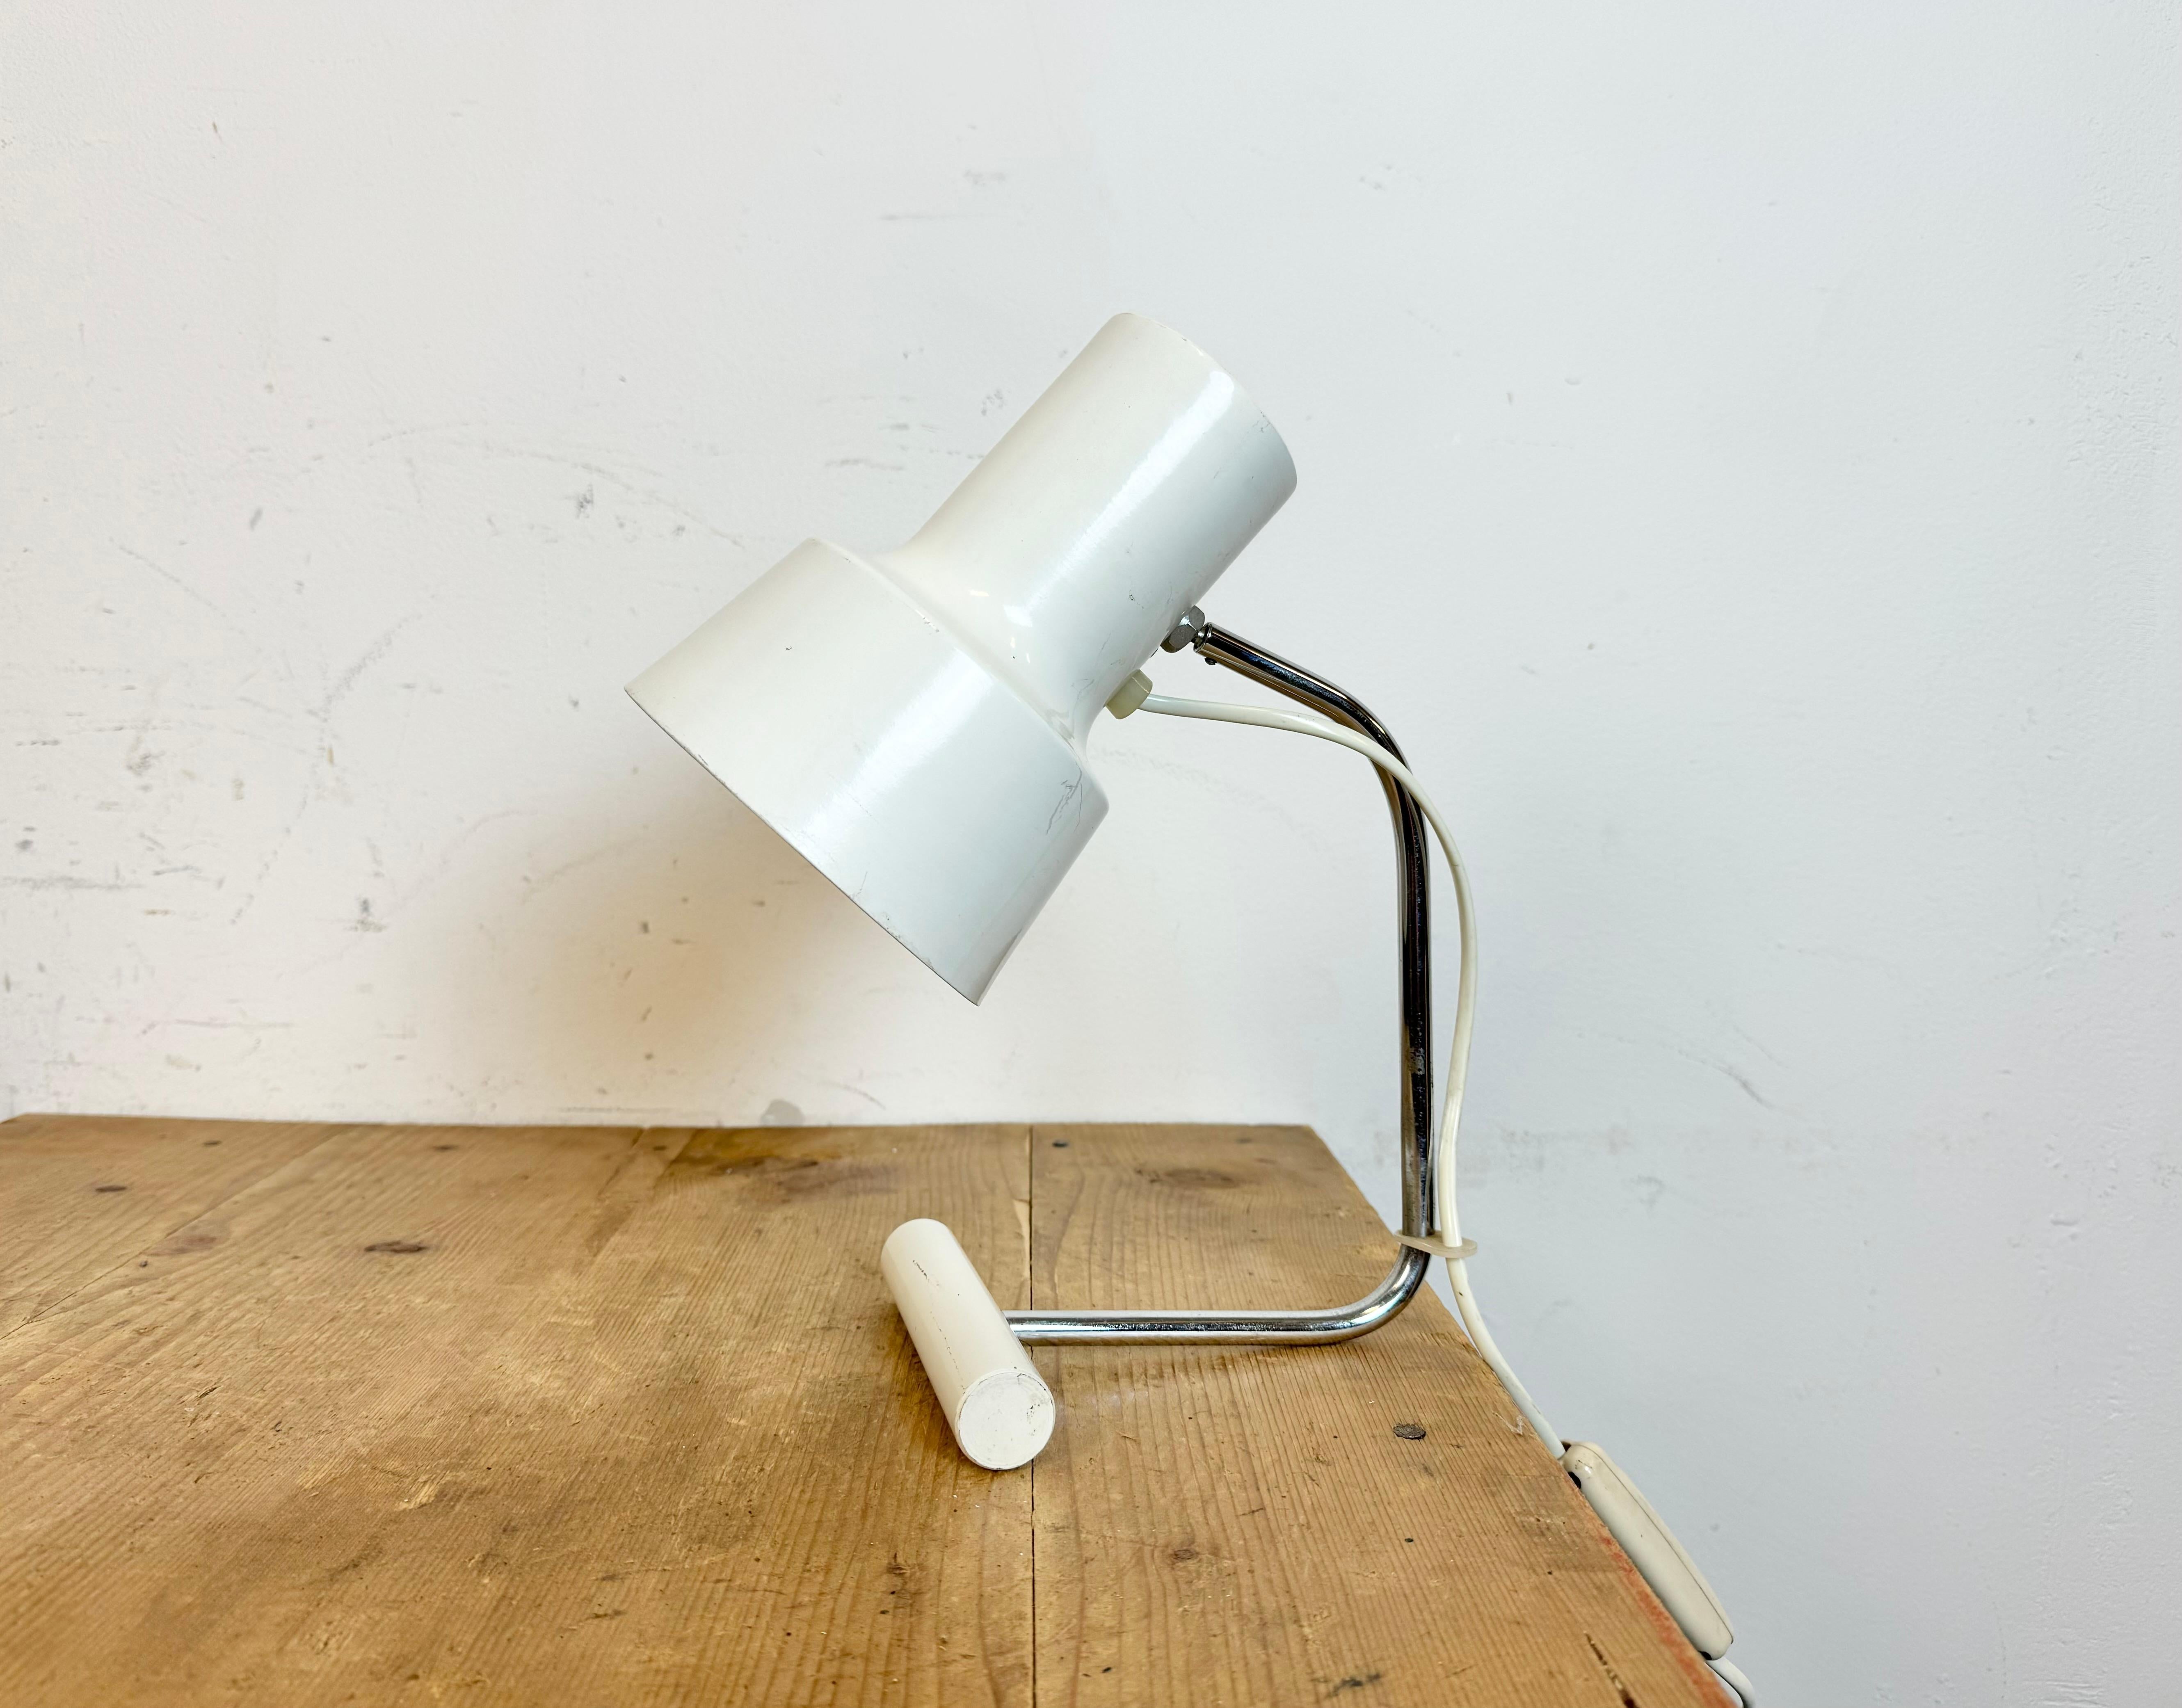 Vintage-Tischleuchte, entworfen von Josef Hurka und hergestellt von Napako in der ehemaligen Tschechoslowakei in den 1970er Jahren, mit Aluminiumschirm und verchromtem Arm mit Eisensockel. Die Originalfassung erfordert E27/E26-Glühbirnen. Der